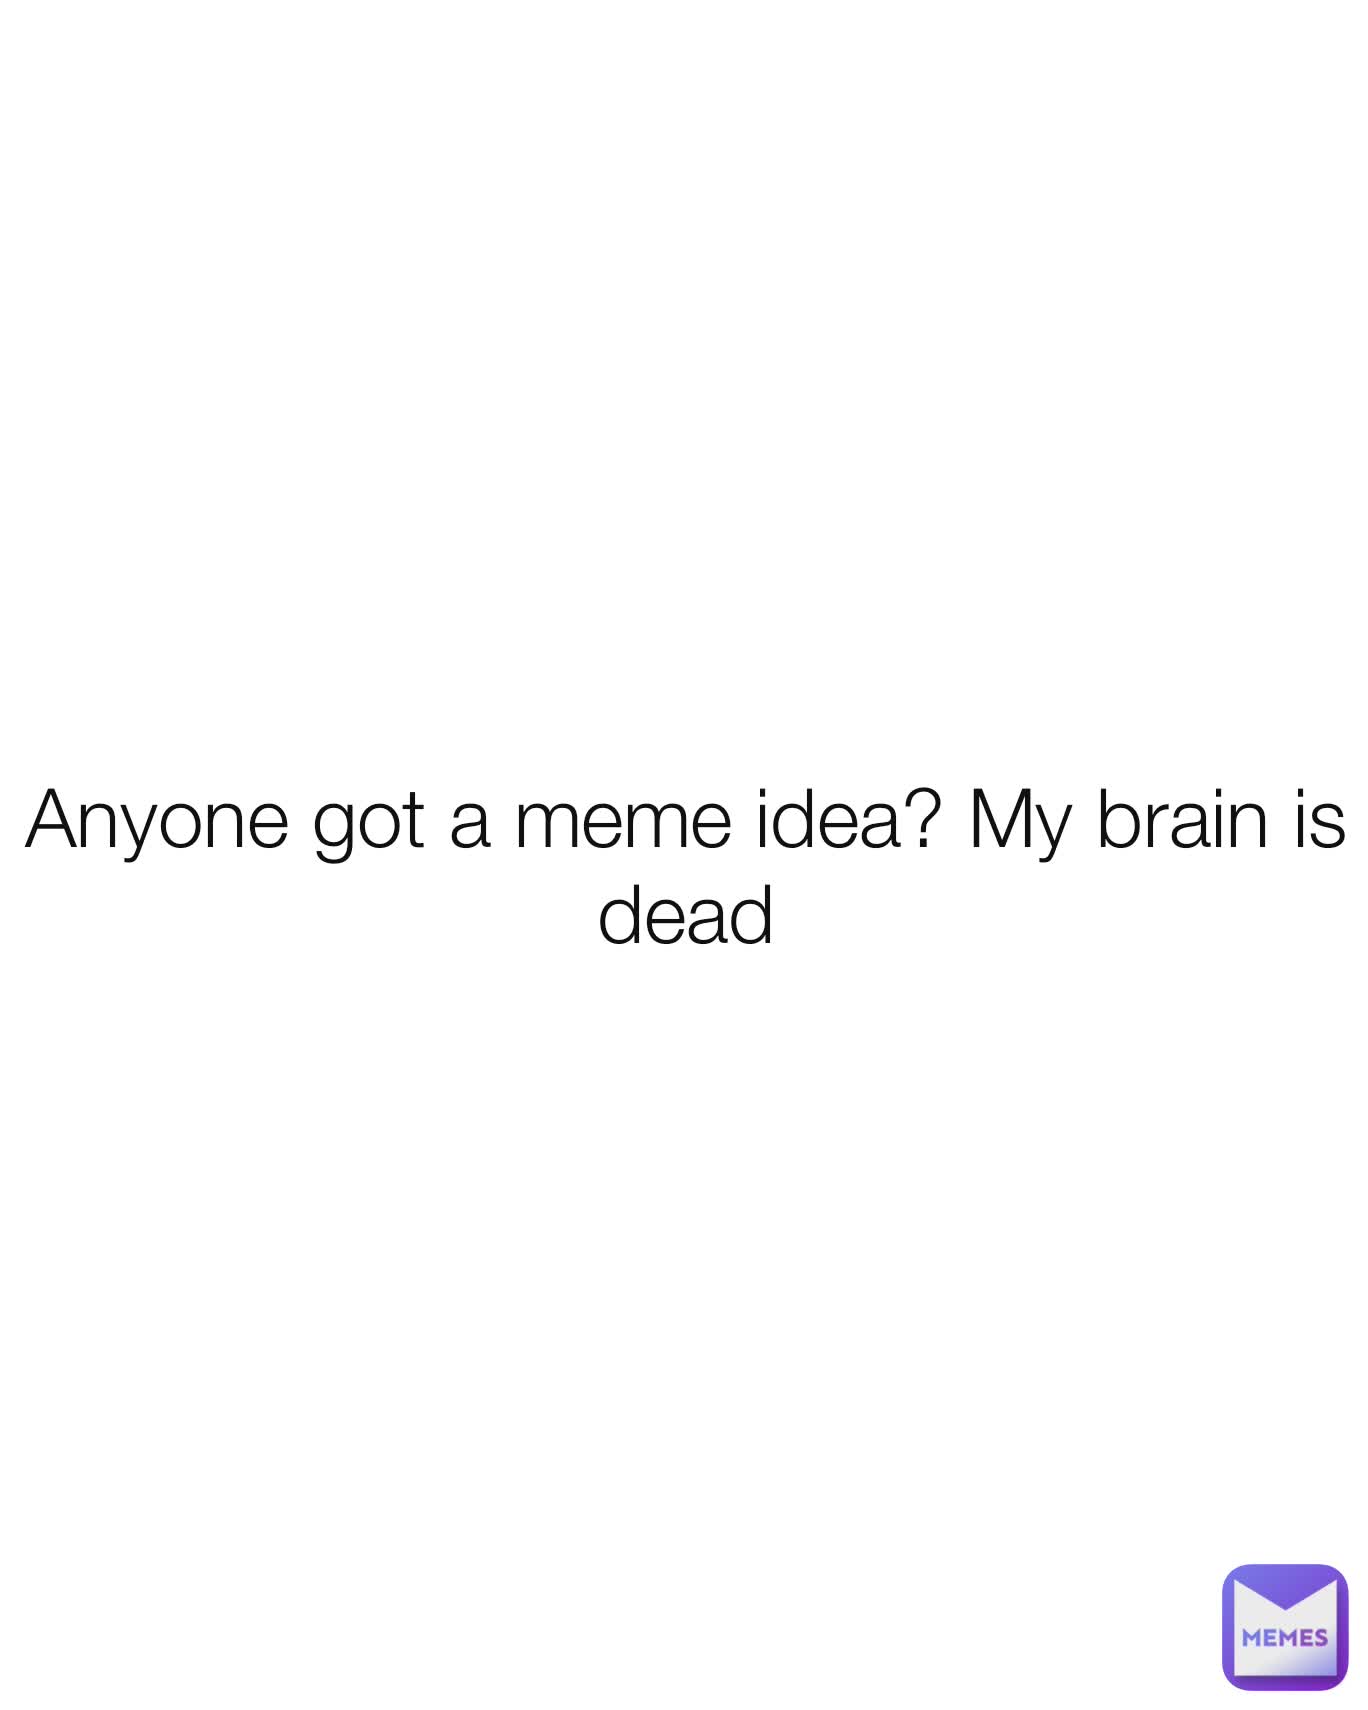 Anyone got a meme idea? My brain is dead